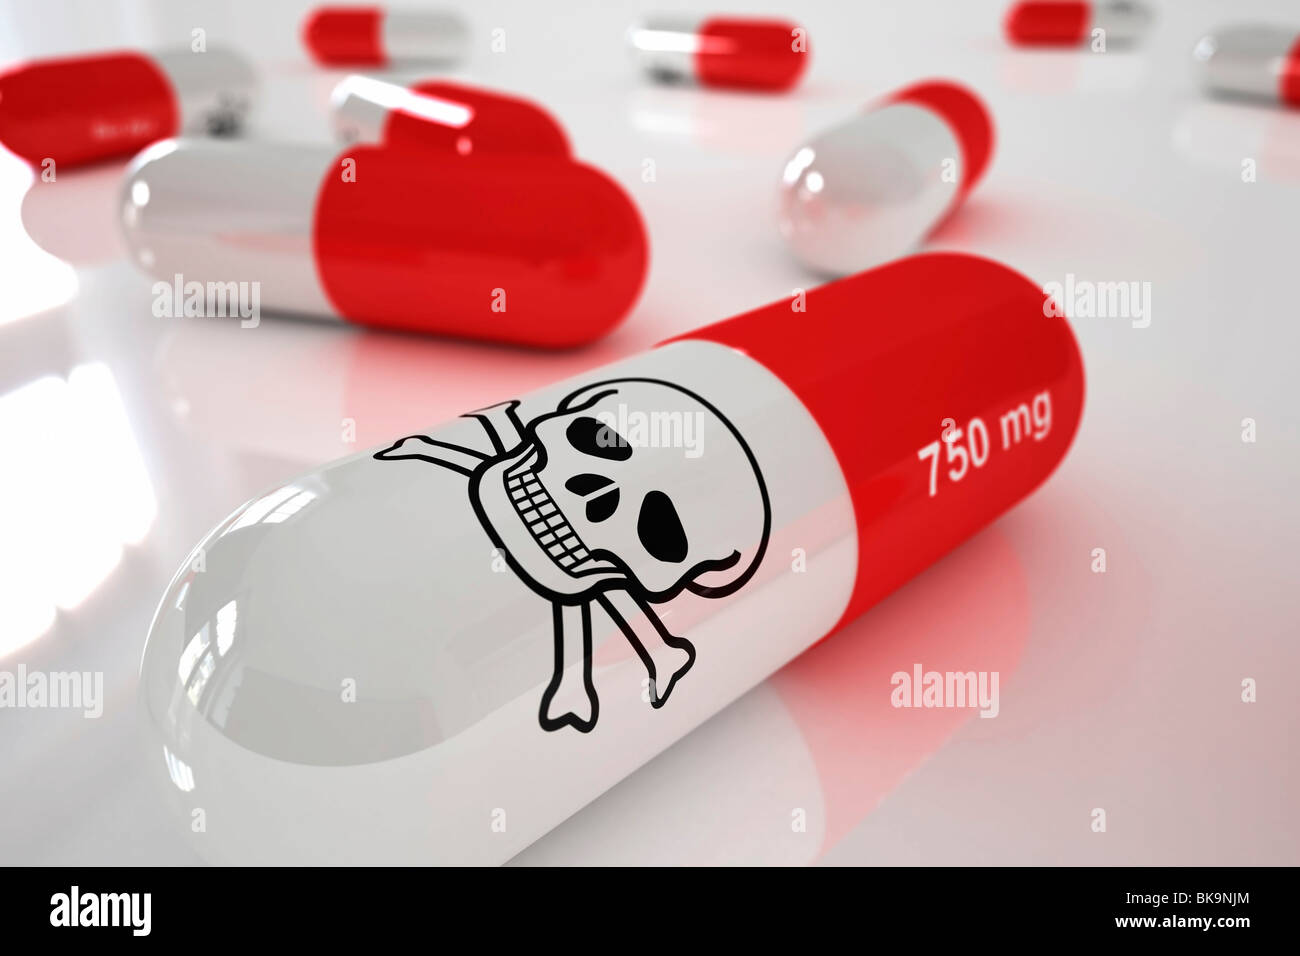 Tödliche Medikamente, Konzept zur Überdosierung oder Missbrauch von Drogen Stockfoto